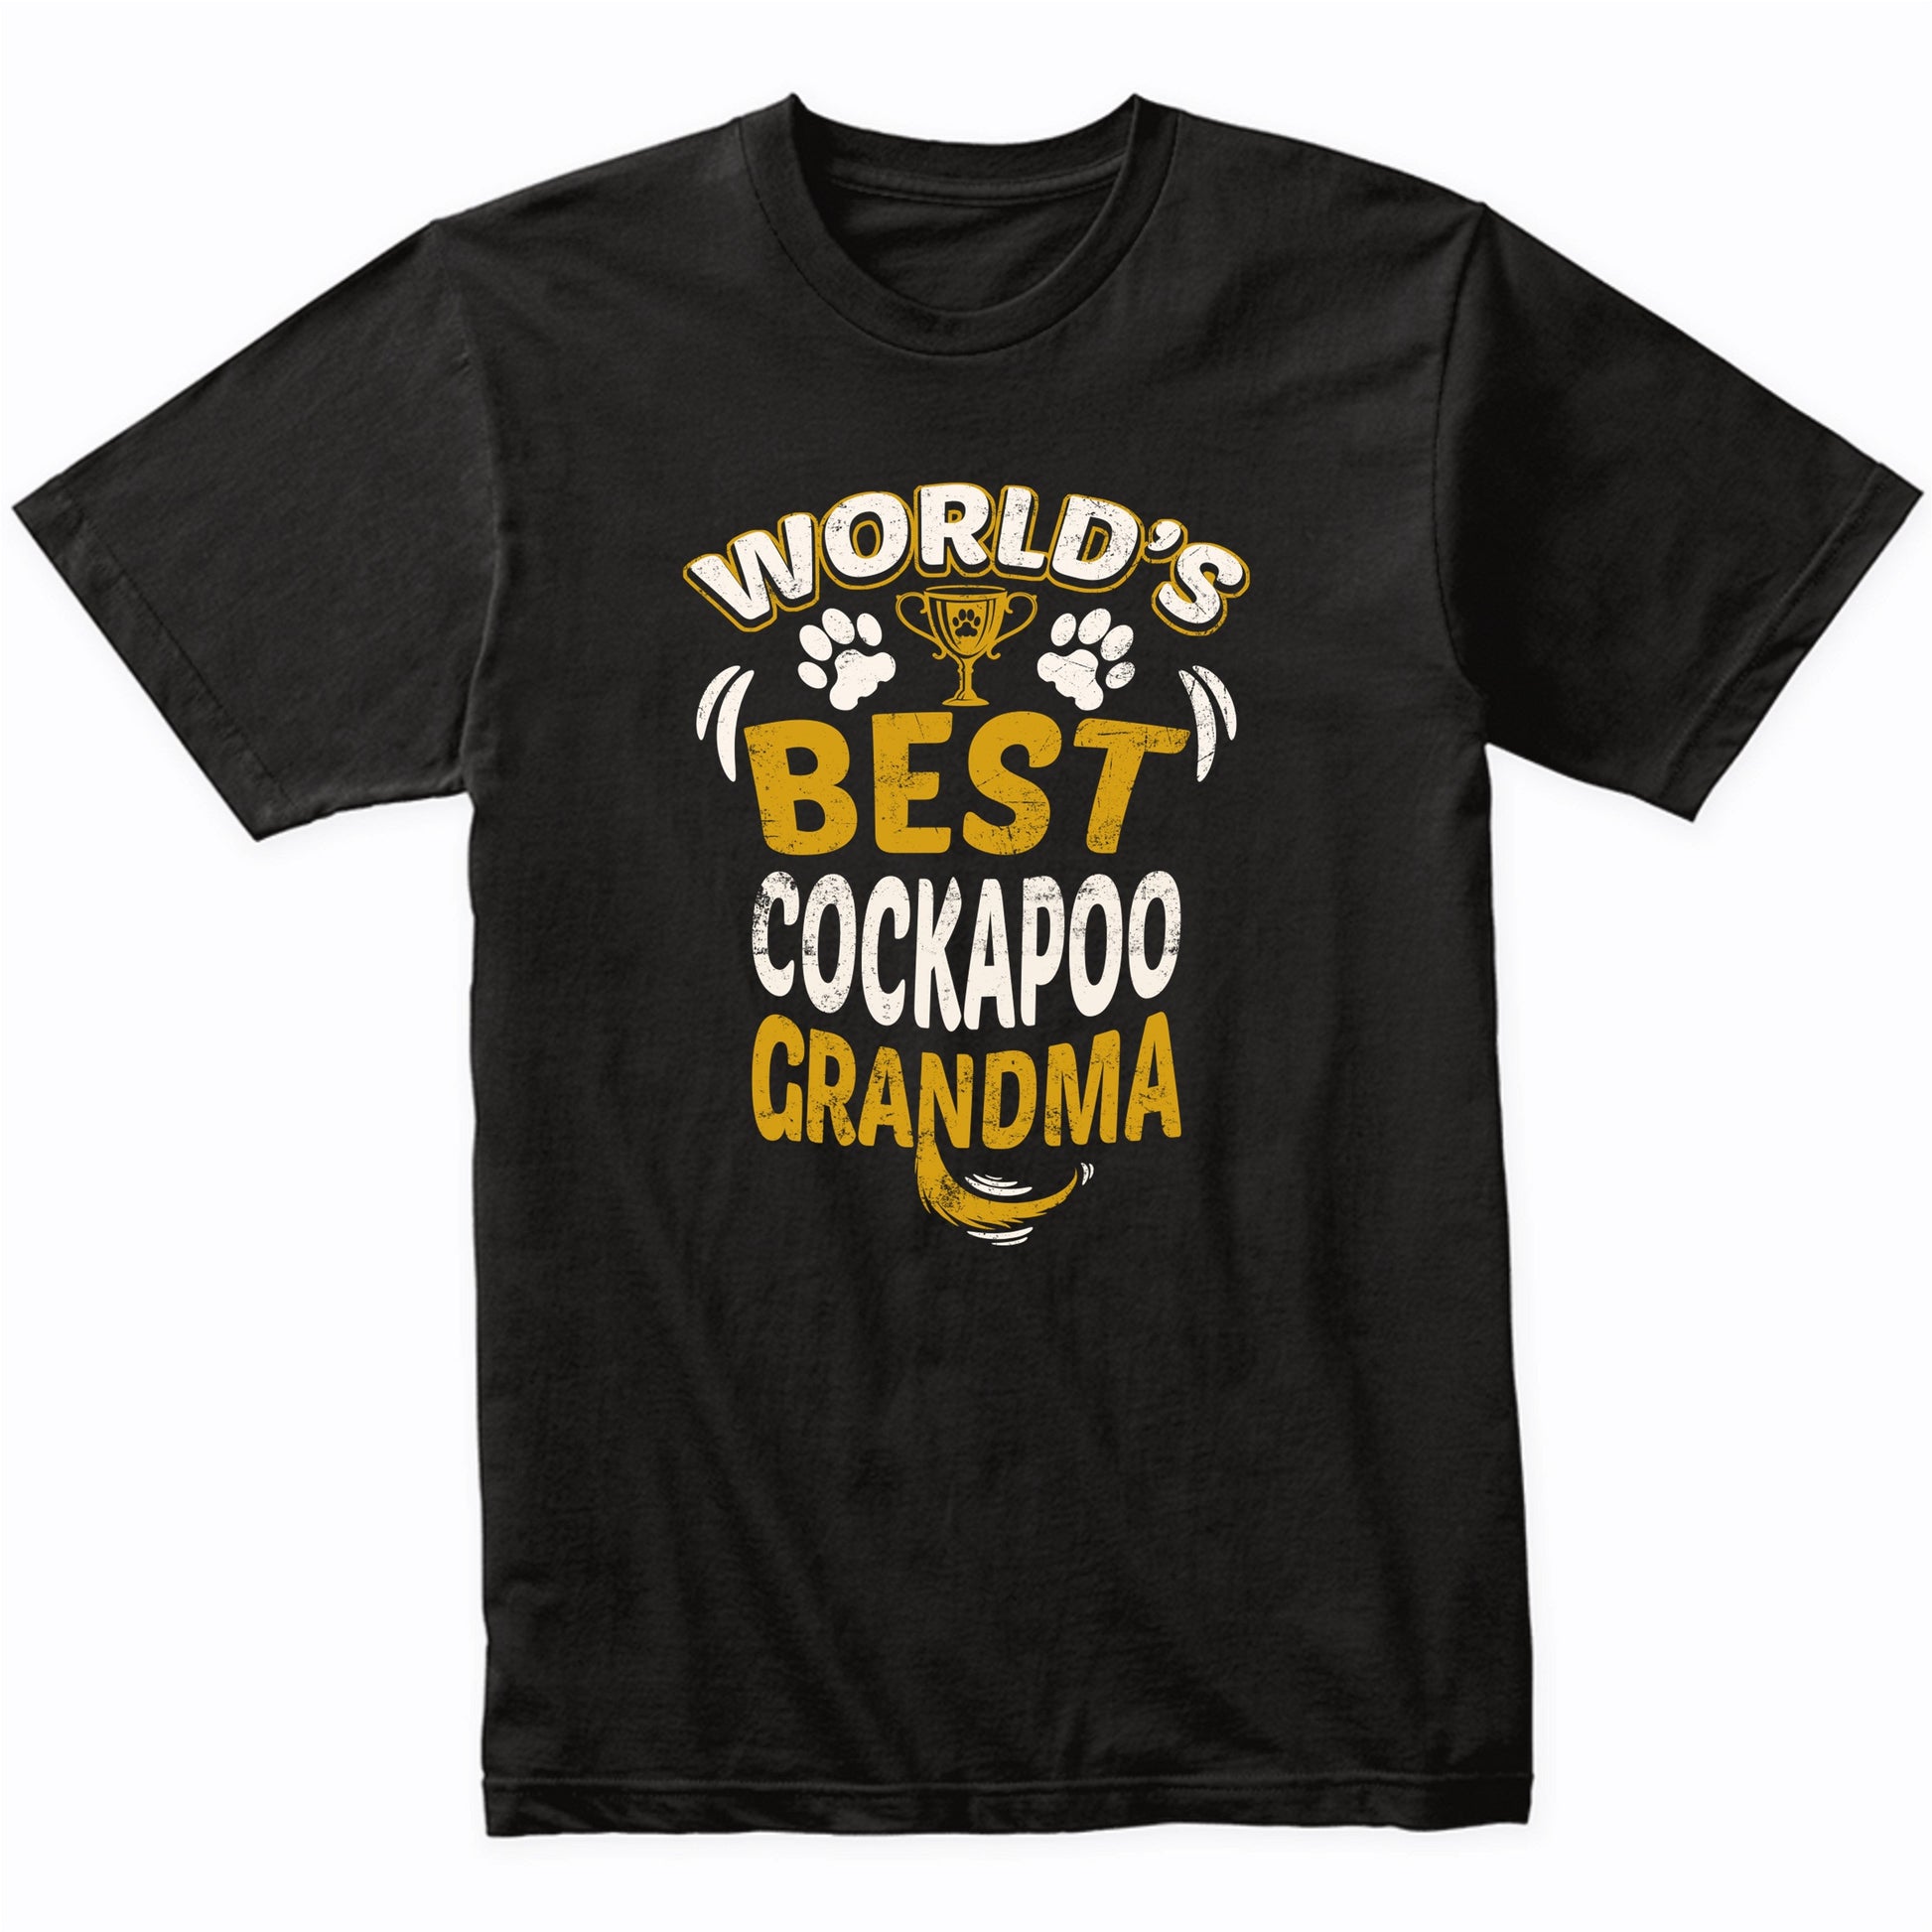 World's Best Cockapoo Grandma Graphic T-Shirt